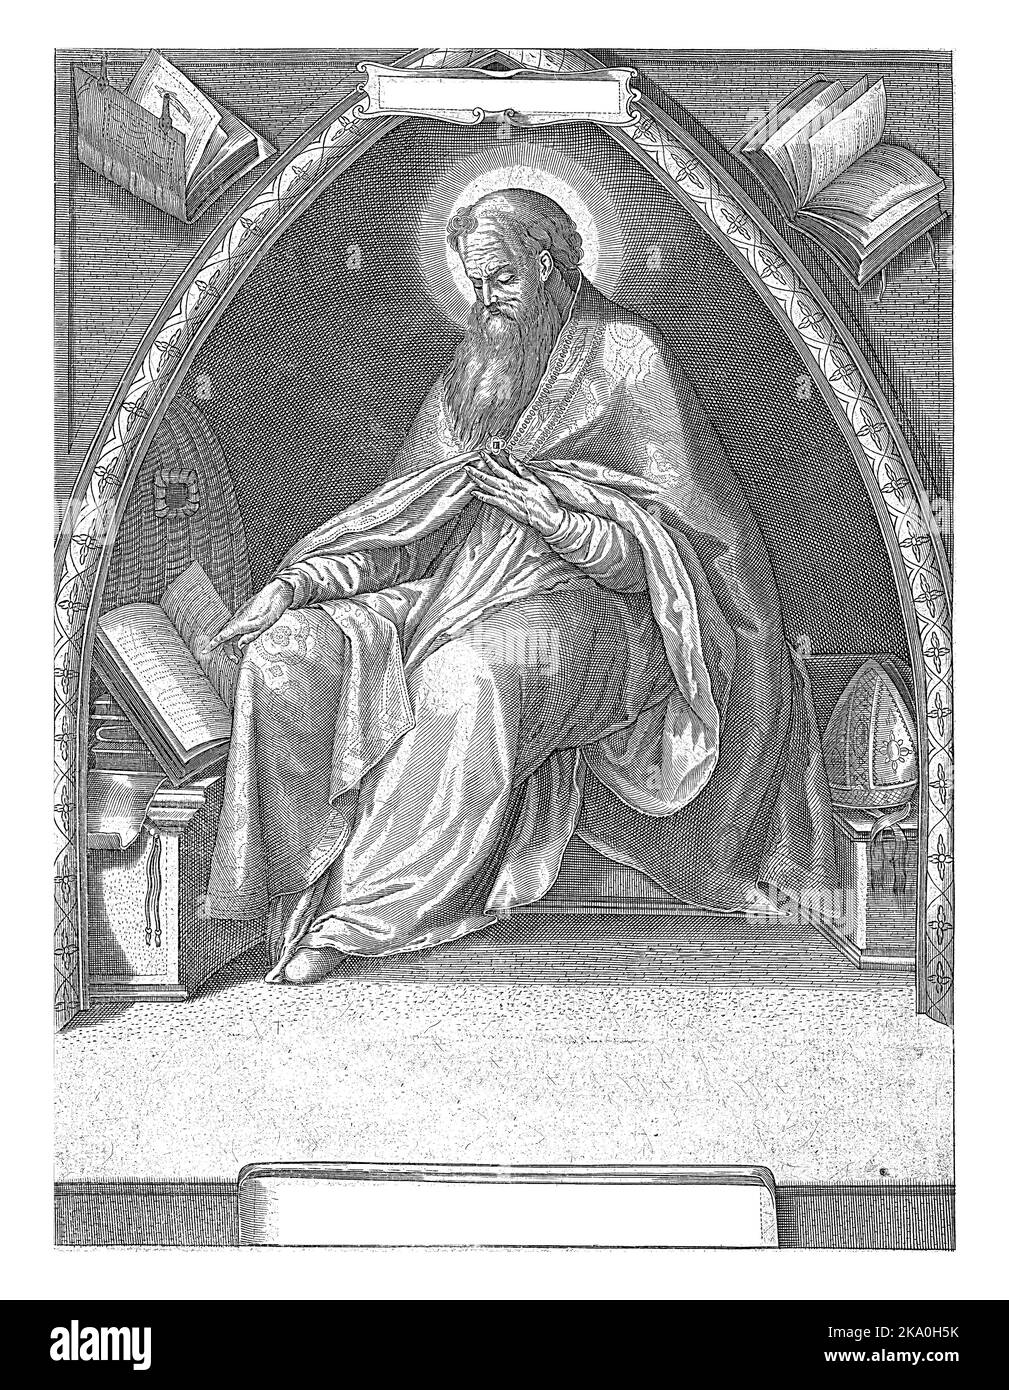 St. Ambrosius, Kirchenvater und Bischof von Mailand, sitzt in einem Kirchengewölbe. Er trägt den Mantel des Bischofs und seine Mitra liegt neben ihm auf einer Bank. Hey l Stockfoto